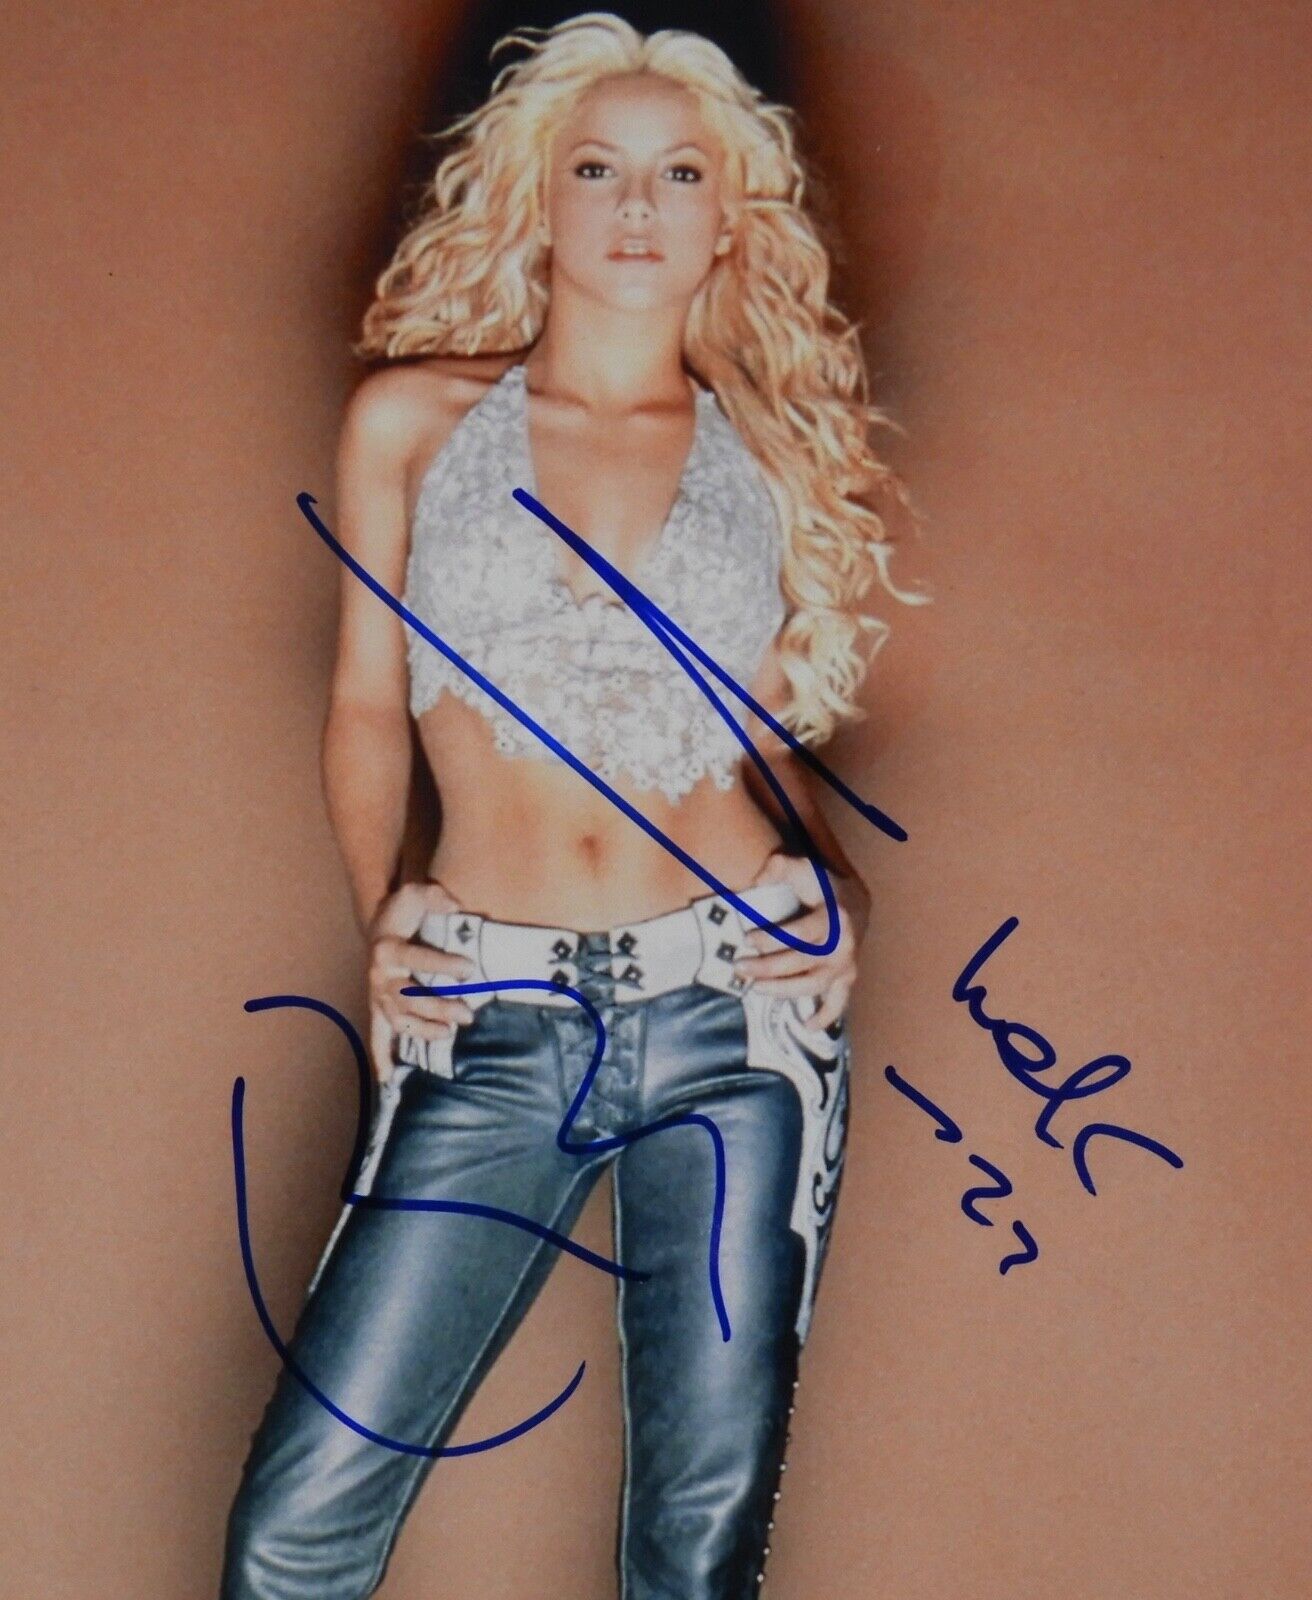 Shakira Autograph JSA 8 x 10 Signed Photo